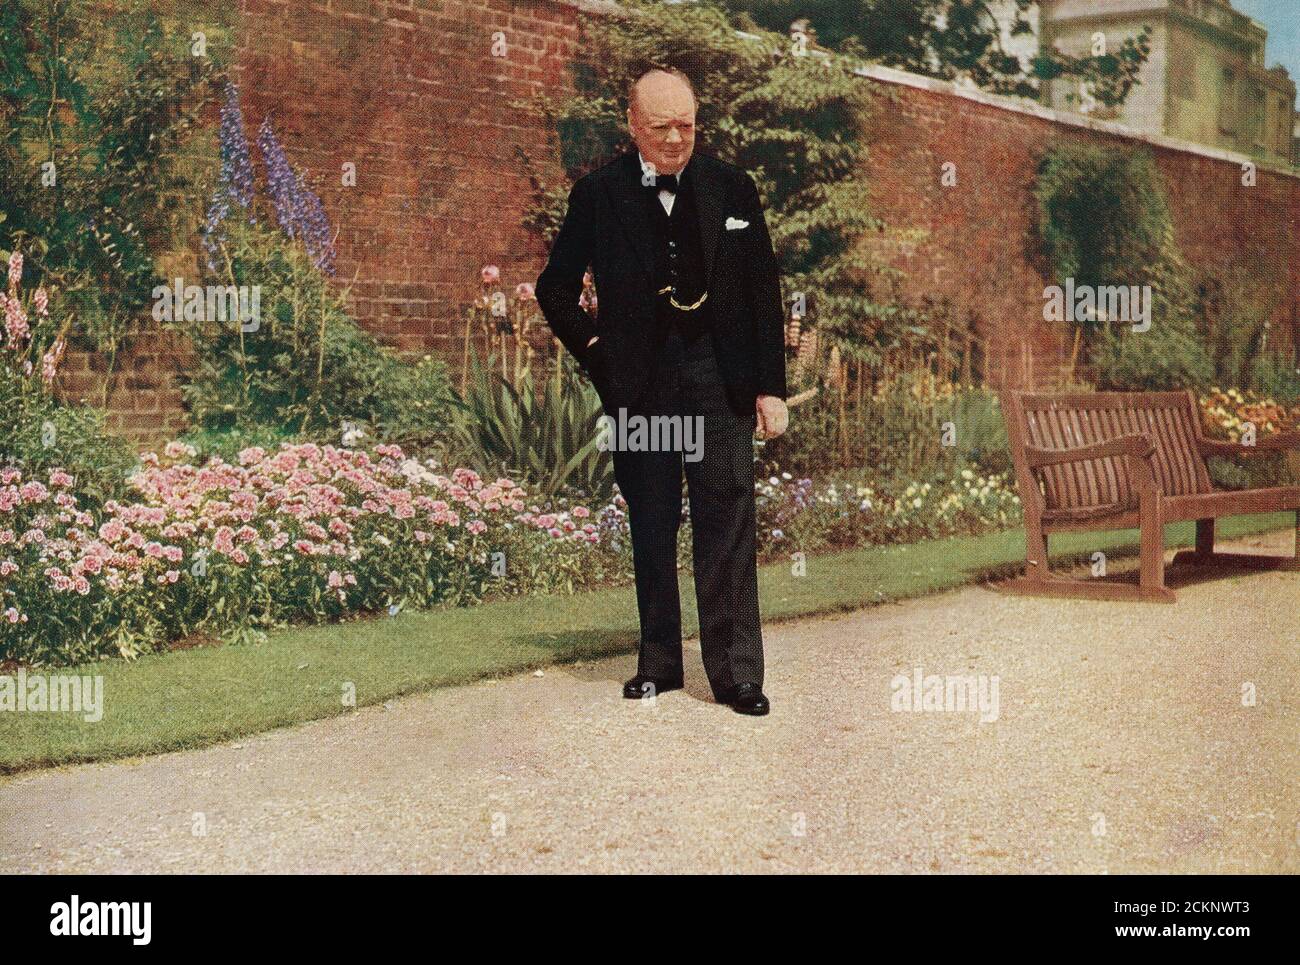 Winston Churchill im Garten von 10 Downing Street, während des Zweiten Weltkriegs. Sir Winston Leonard Spencer-Churchill, 1874 – 1965. Britischer Politiker, Armeeoffizier, Schriftsteller und zweimal Premierminister des Vereinigten Königreichs. Stockfoto